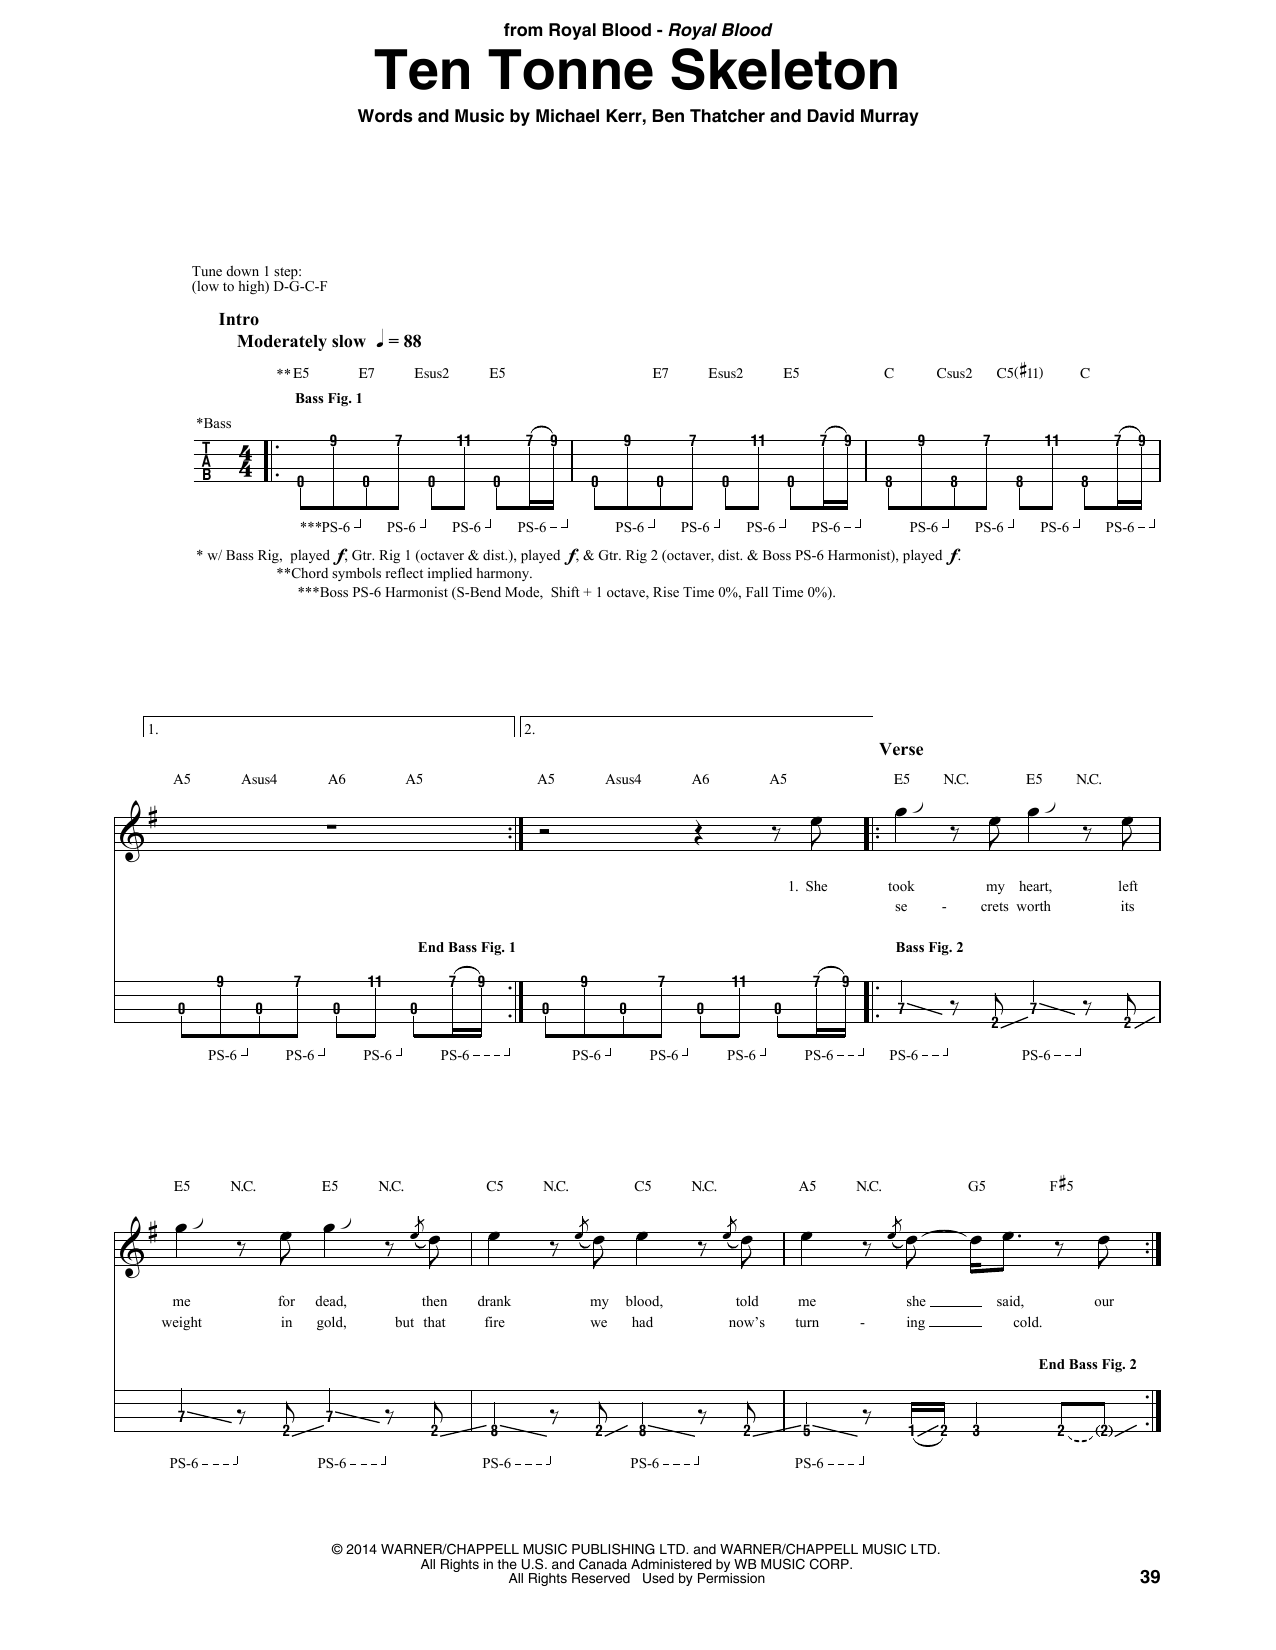 Royal Blood Ten Tonne Skeleton Sheet Music Notes & Chords for Bass Guitar Tab - Download or Print PDF